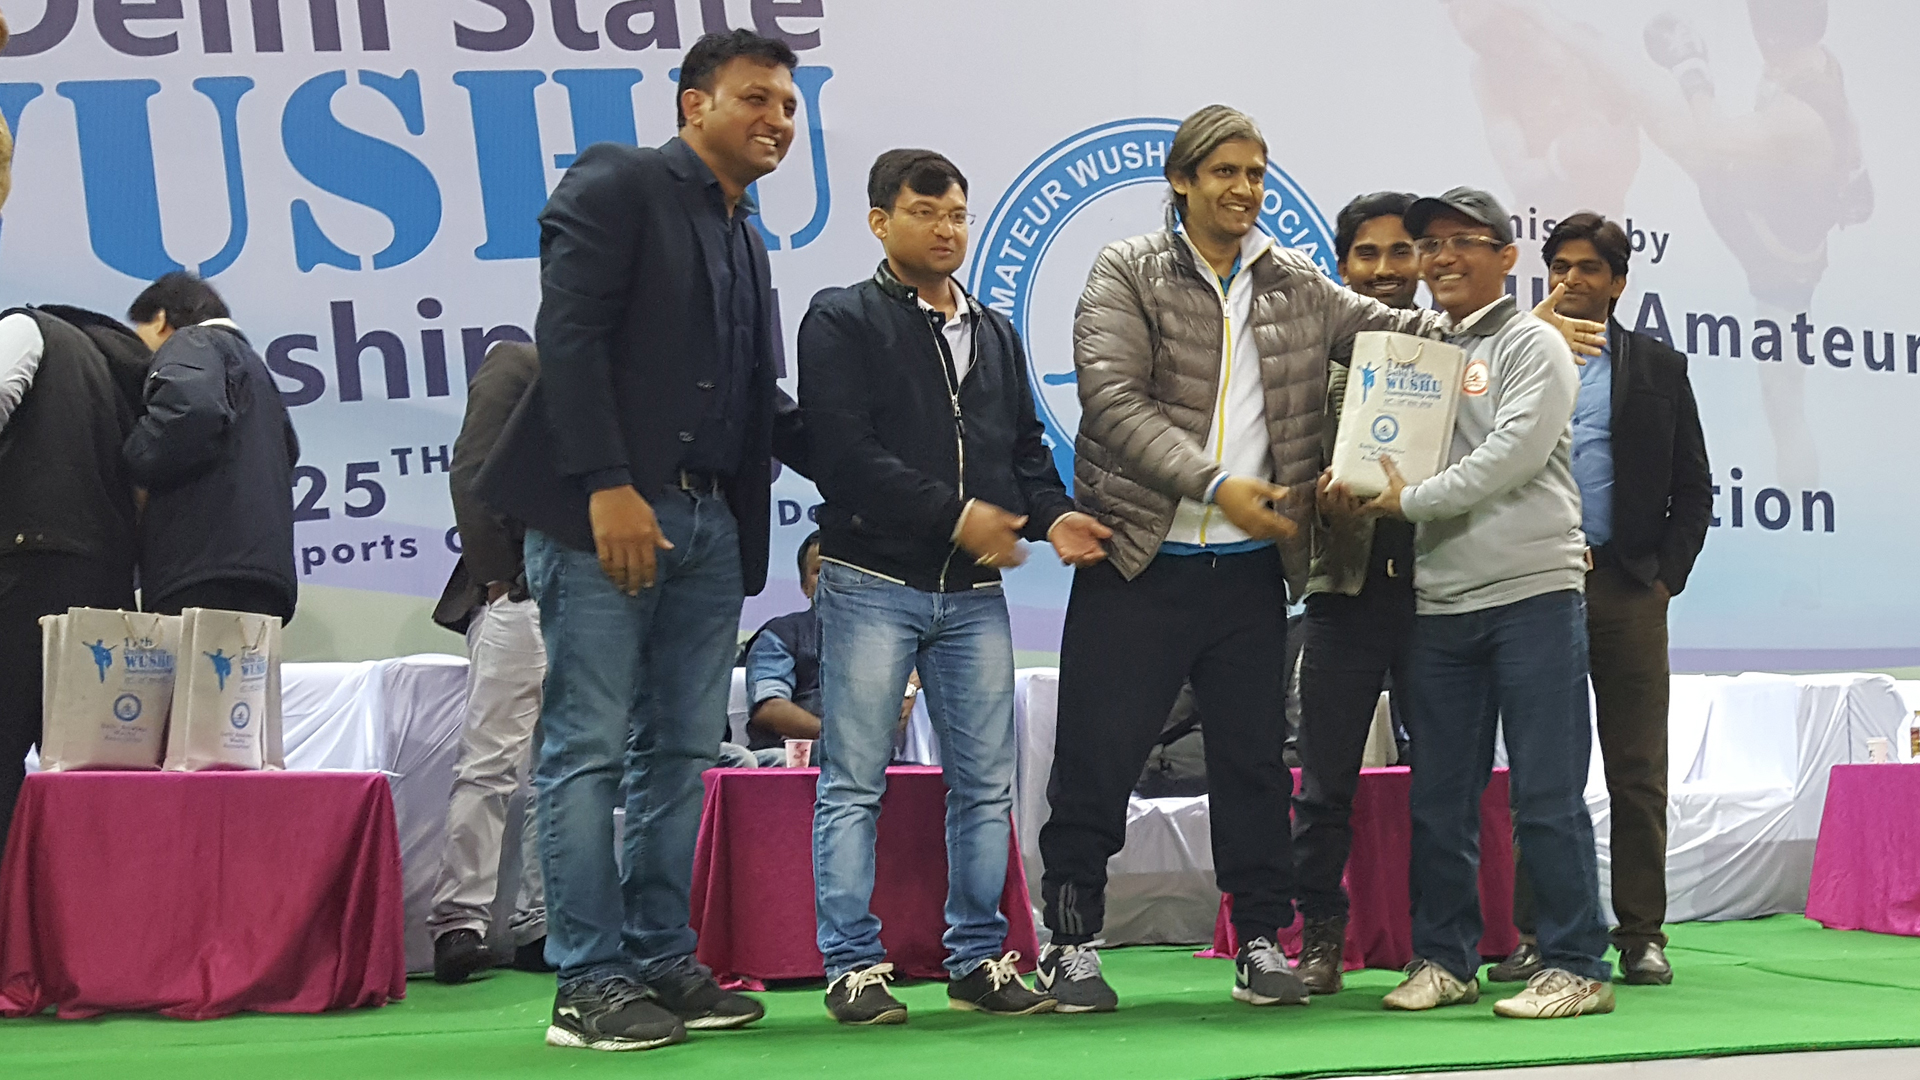 Judging Participation at Delhi State Wushu Championship 2018